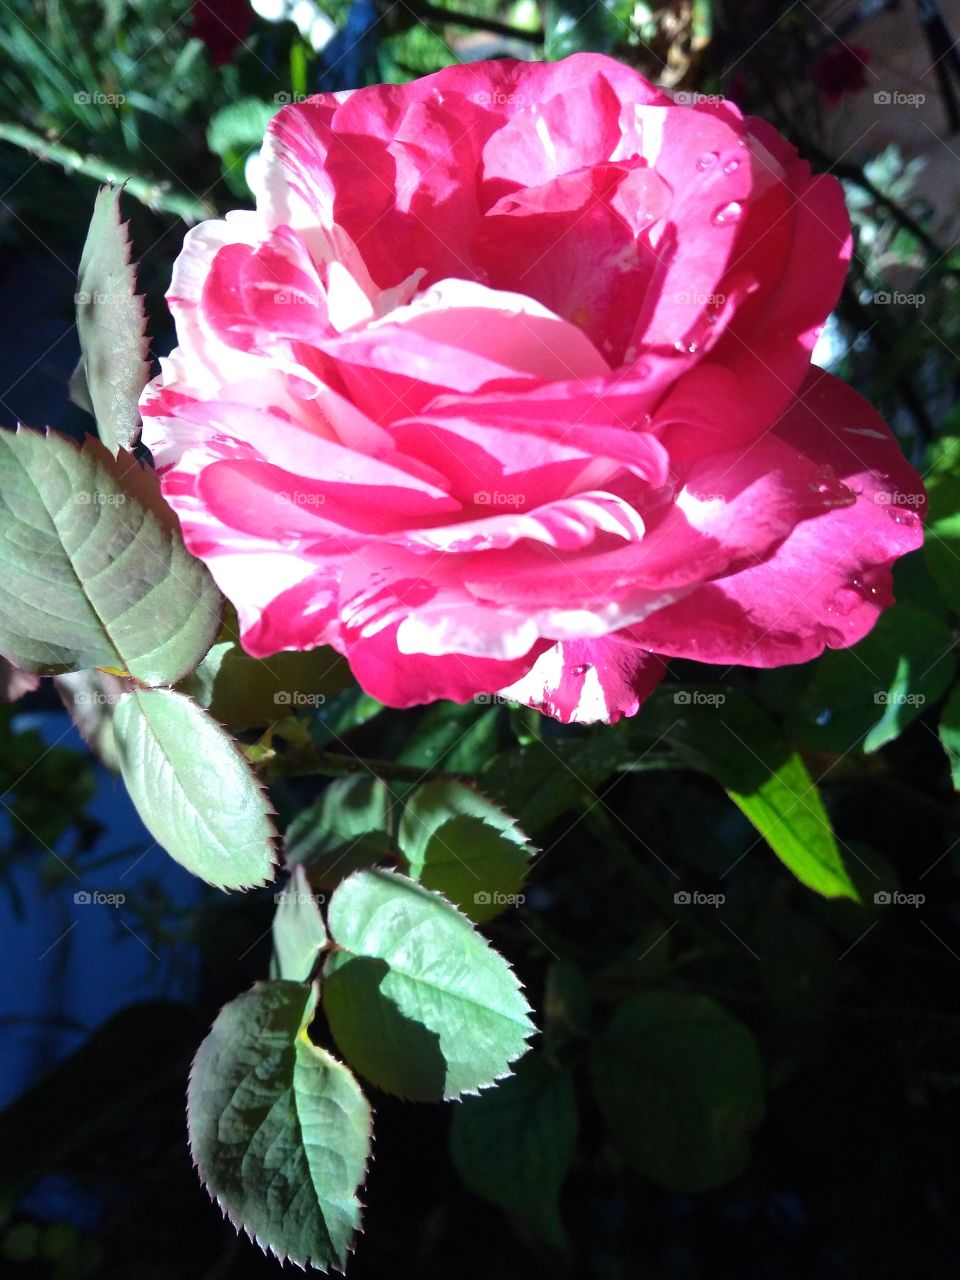 I wish I could share the perfume of this beautiful rose with you through this image.../ Quisera eu poder compartilhar o perfume dessa rosa com vocês...